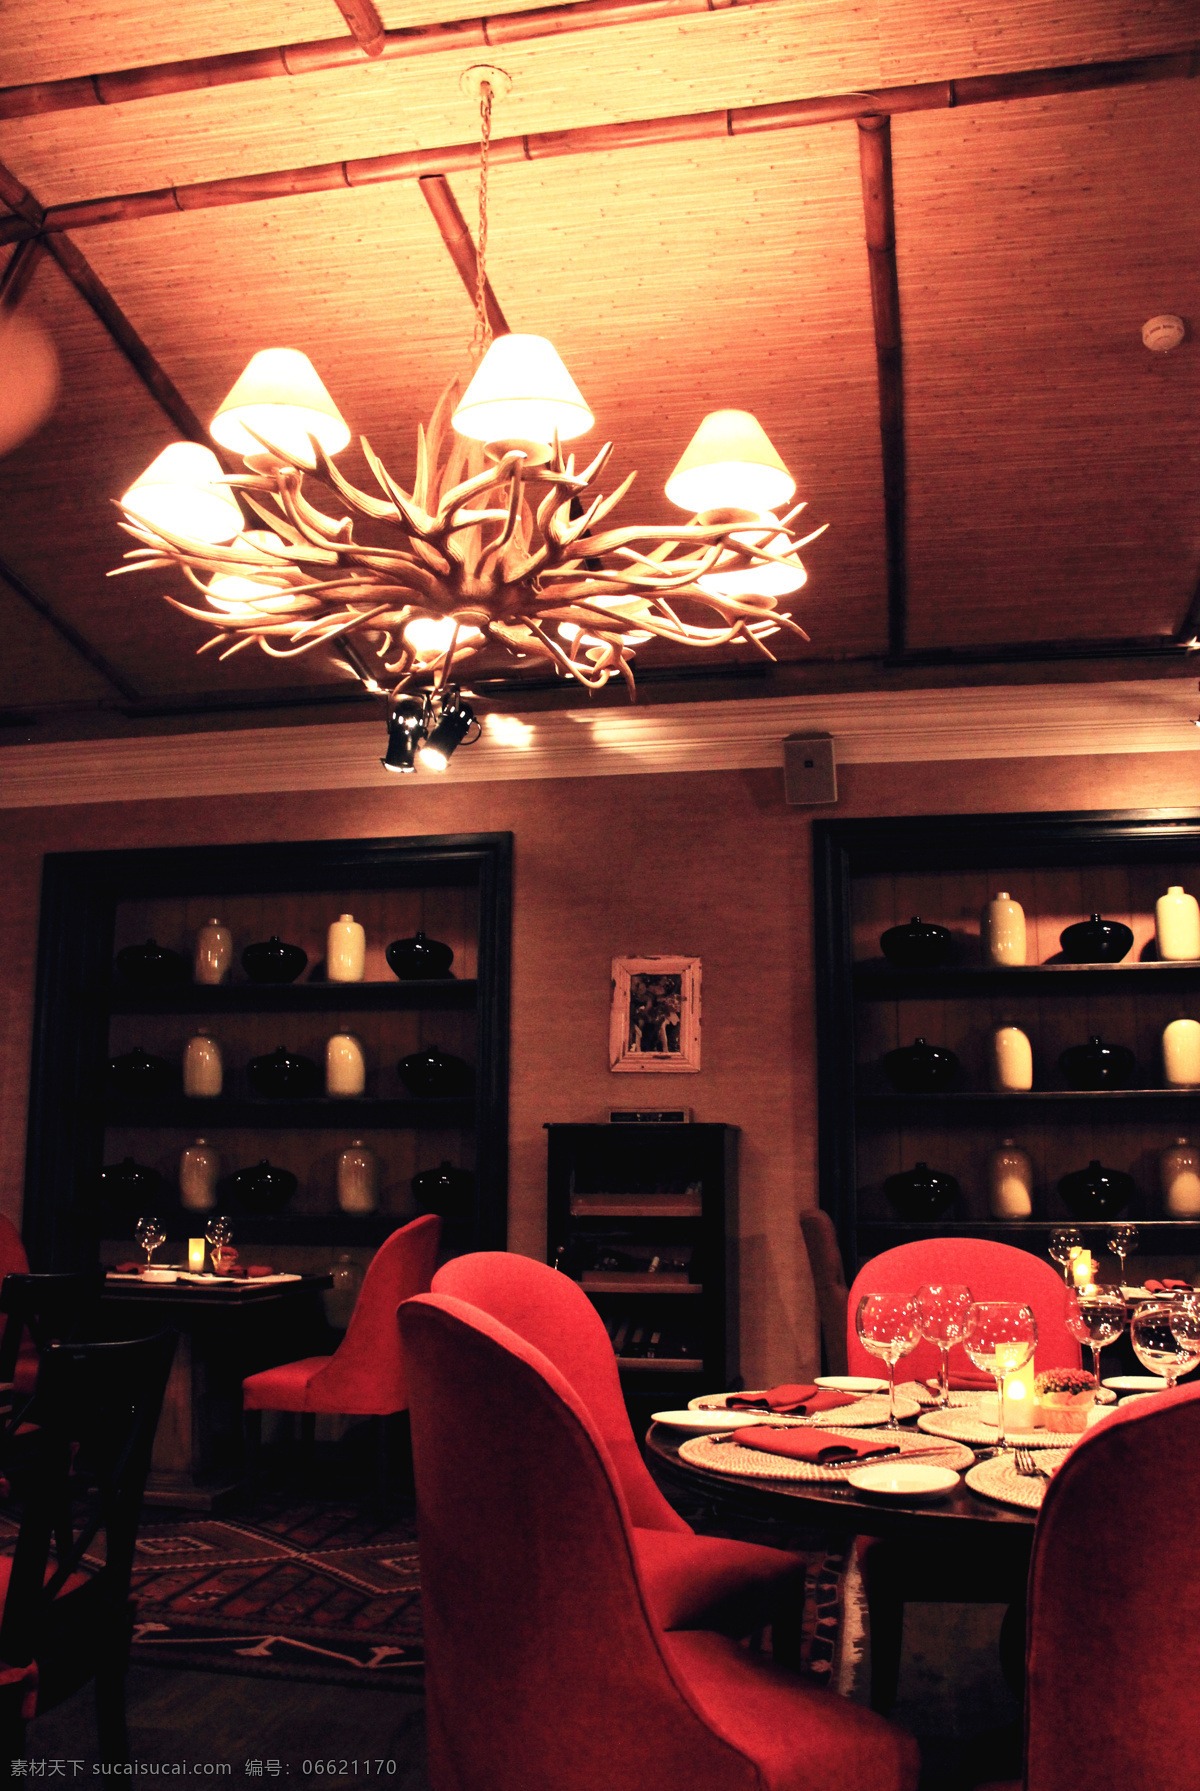 俄式 餐厅 鹿角 灯 吊灯 俄罗斯 建筑园林 室内摄影 莫斯科 俄餐 高级餐厅 装饰素材 灯饰素材